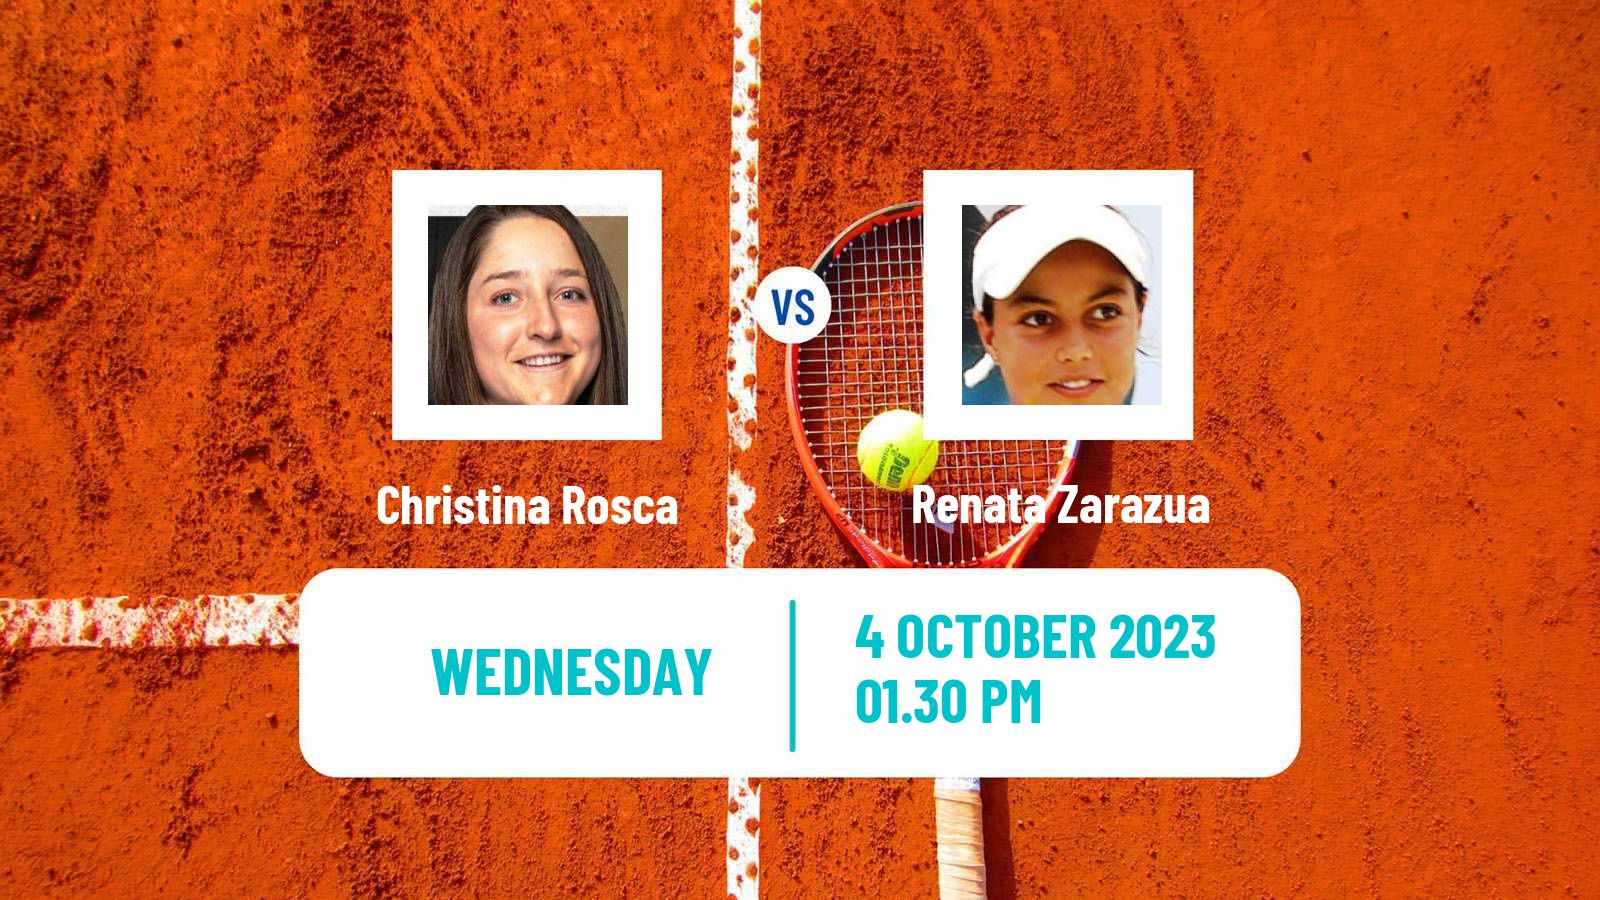 Tennis ITF W60 Rome Ga 2 Women Christina Rosca - Renata Zarazua